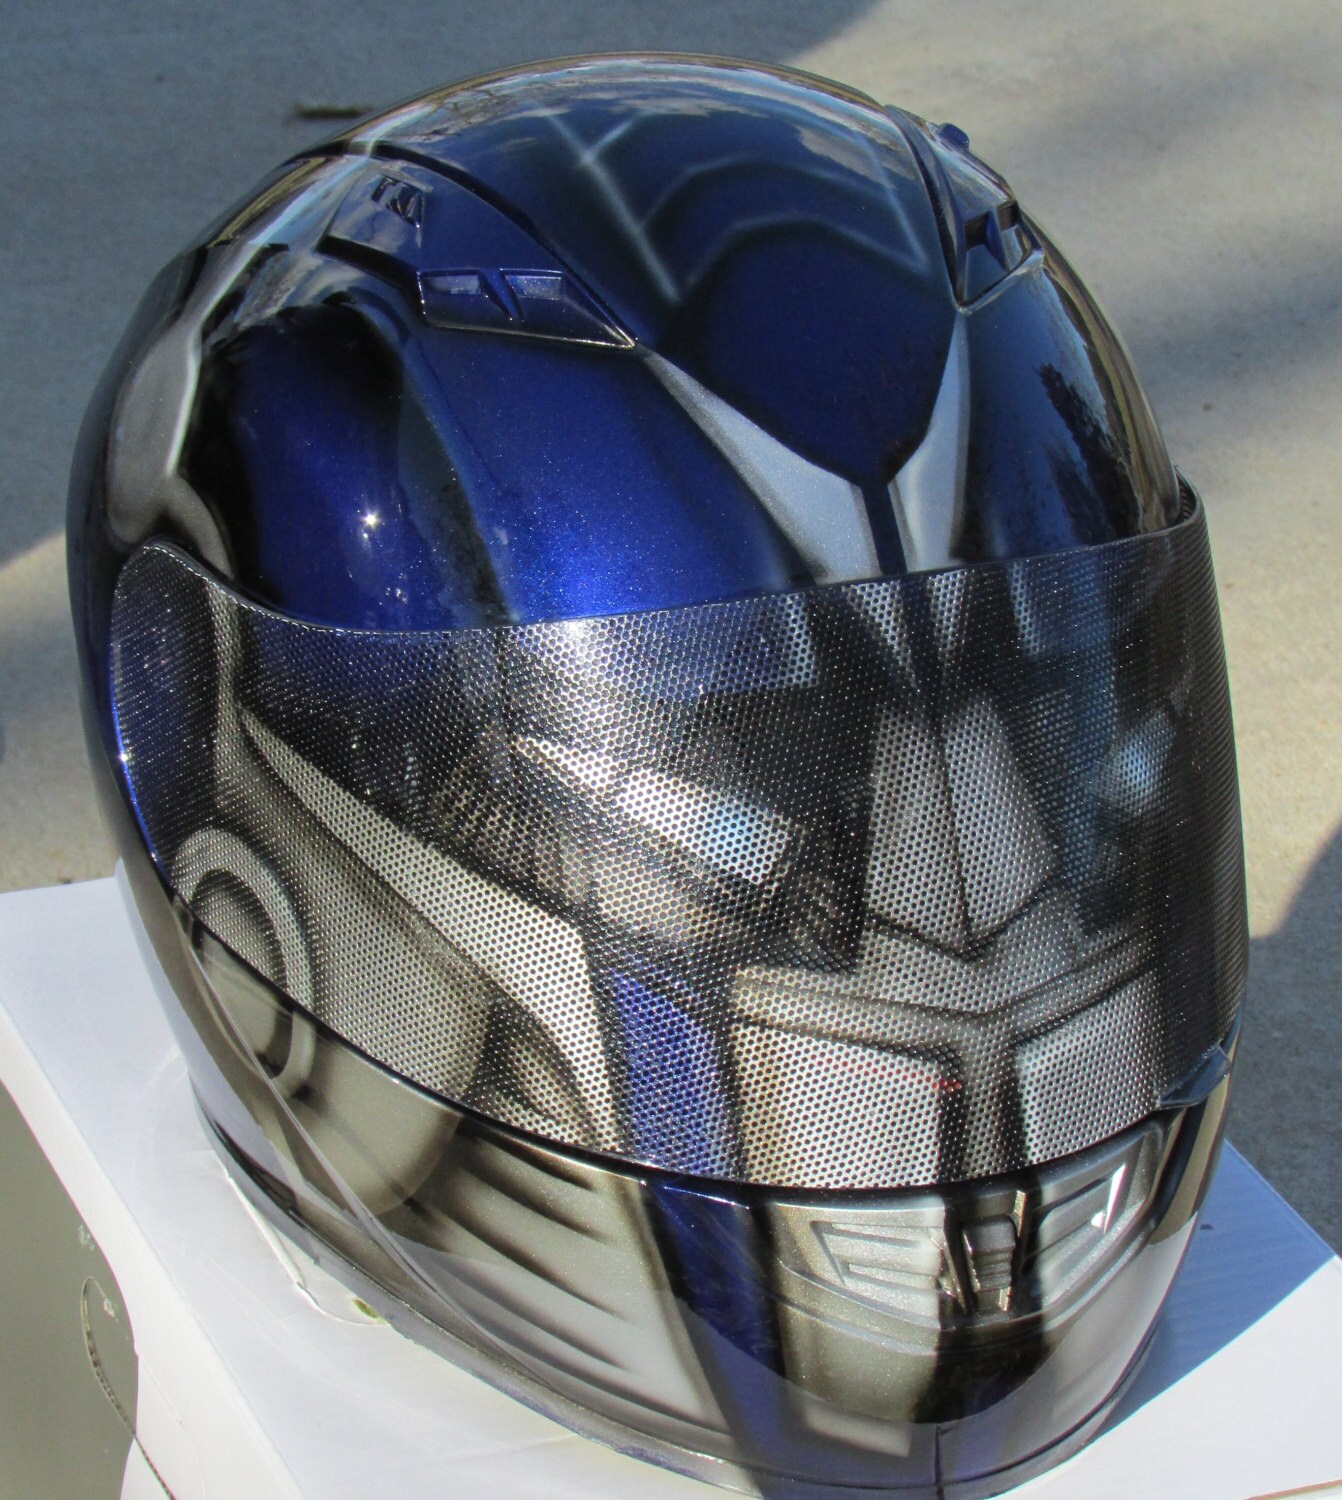 Transformers Optimus Prime custom painted motorcycle helmet